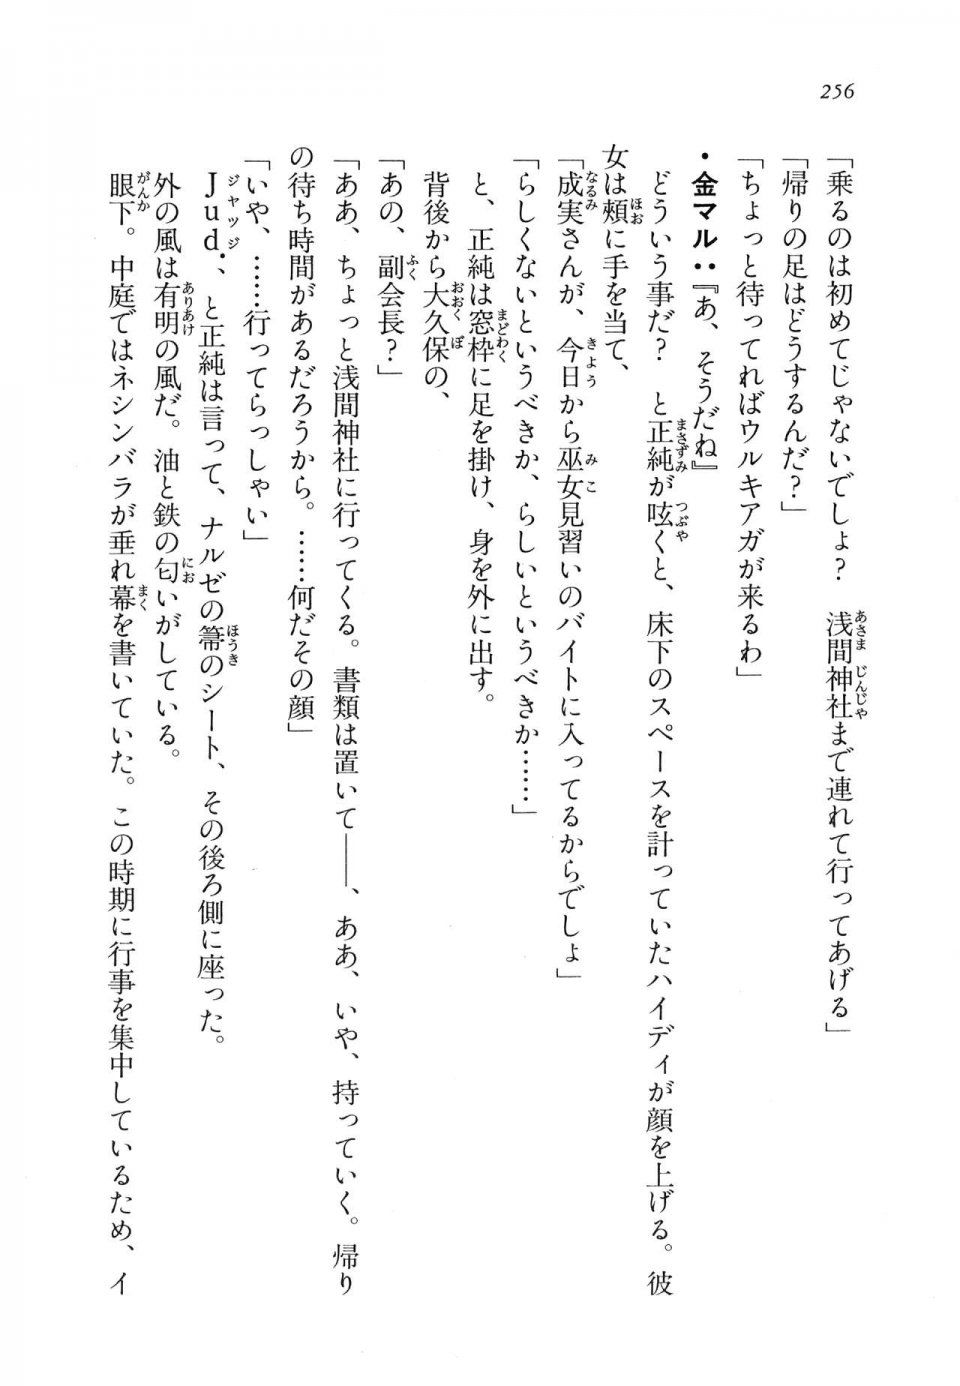 Kyoukai Senjou no Horizon LN Vol 11(5A) - Photo #256